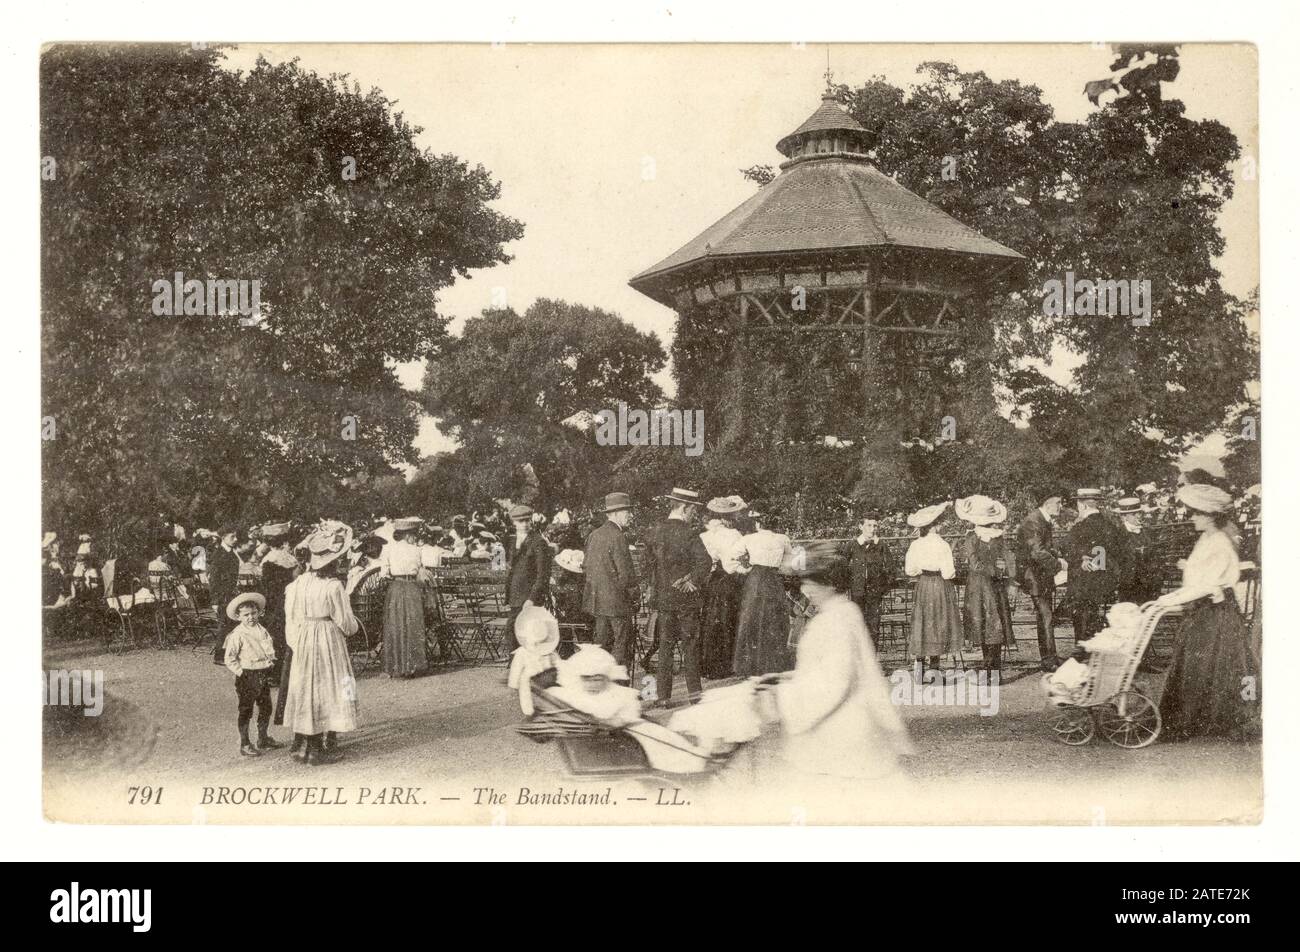 Originalpostkarte aus der Zeit Edwardians mit Besuchern, die einen Tag im Brockwell Park mit Bandstand und Zuschauern verbringen, Lambeth, London, um 1910 Stockfoto